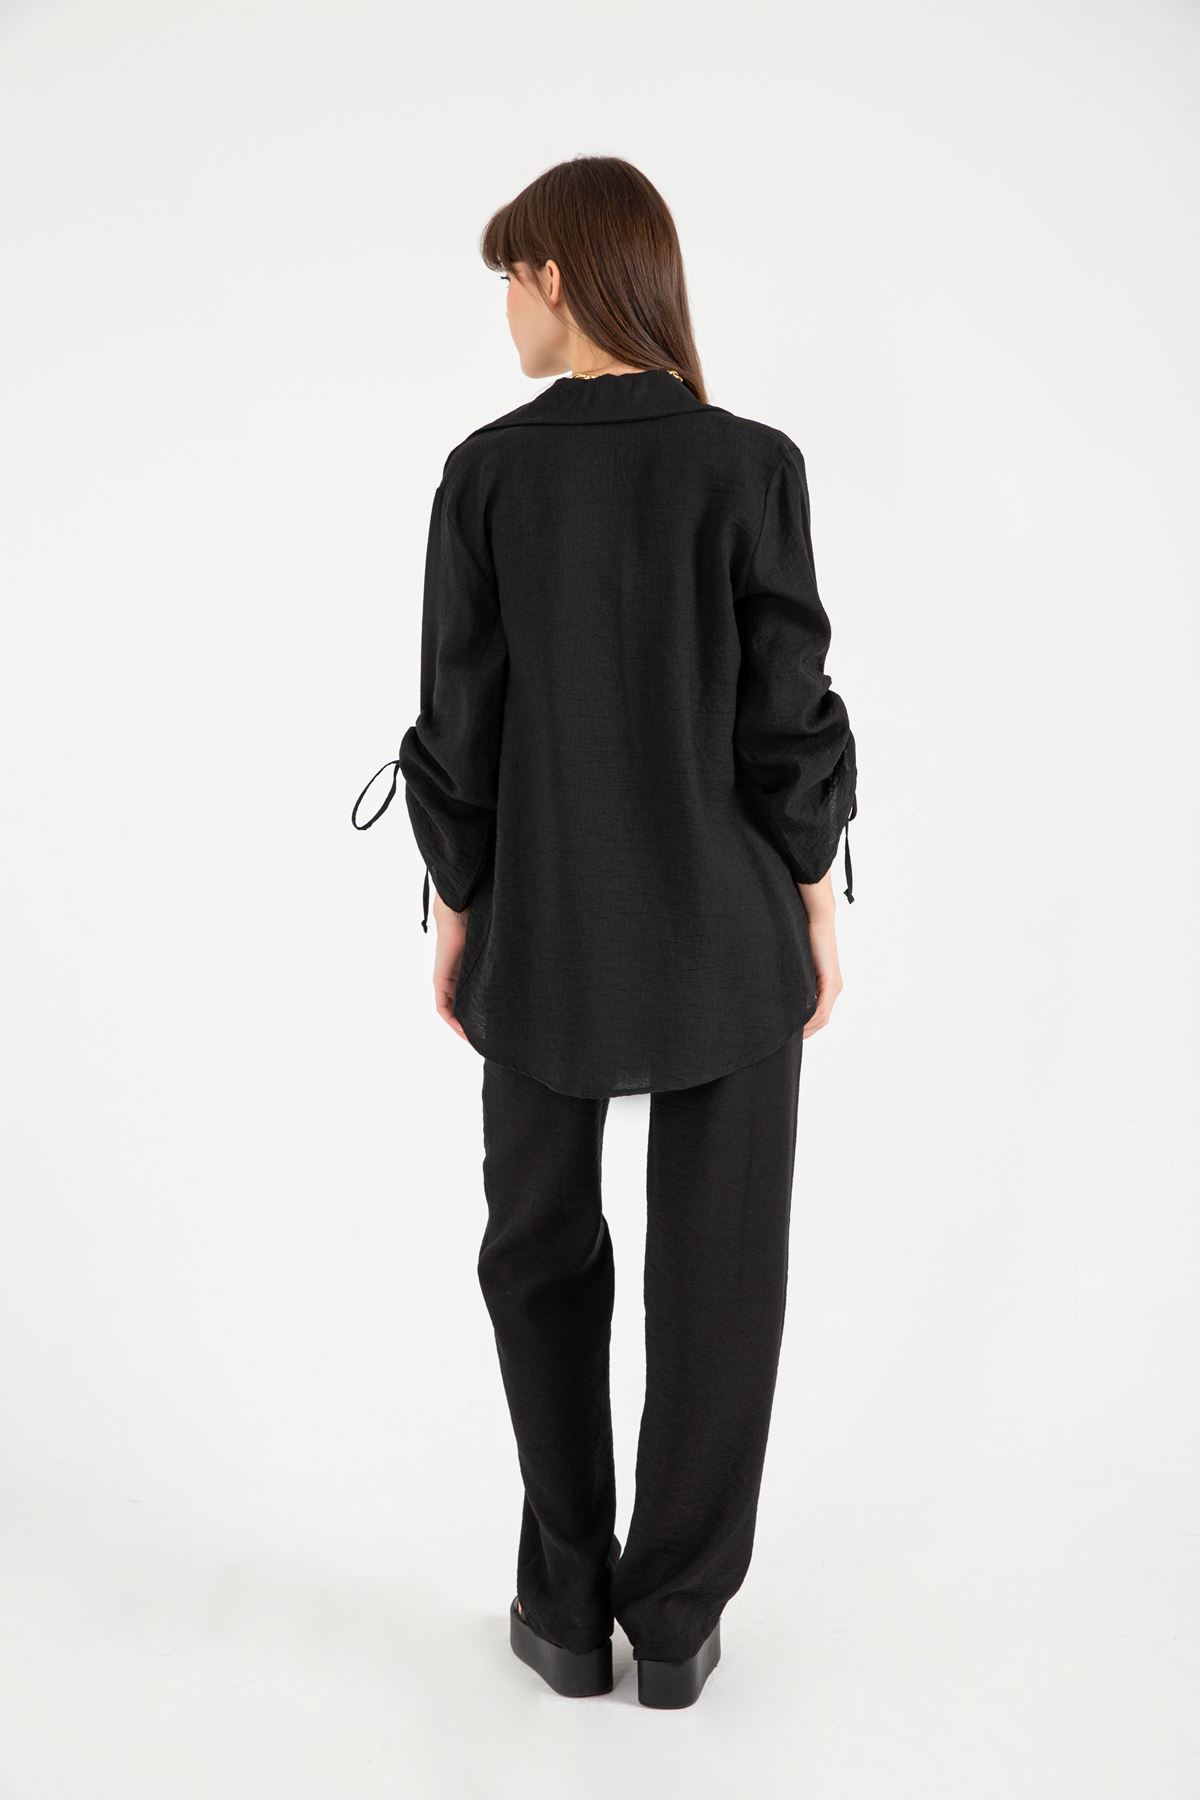 Linen Fabric Sleeve Detailed Oversize Women Shirt - Black